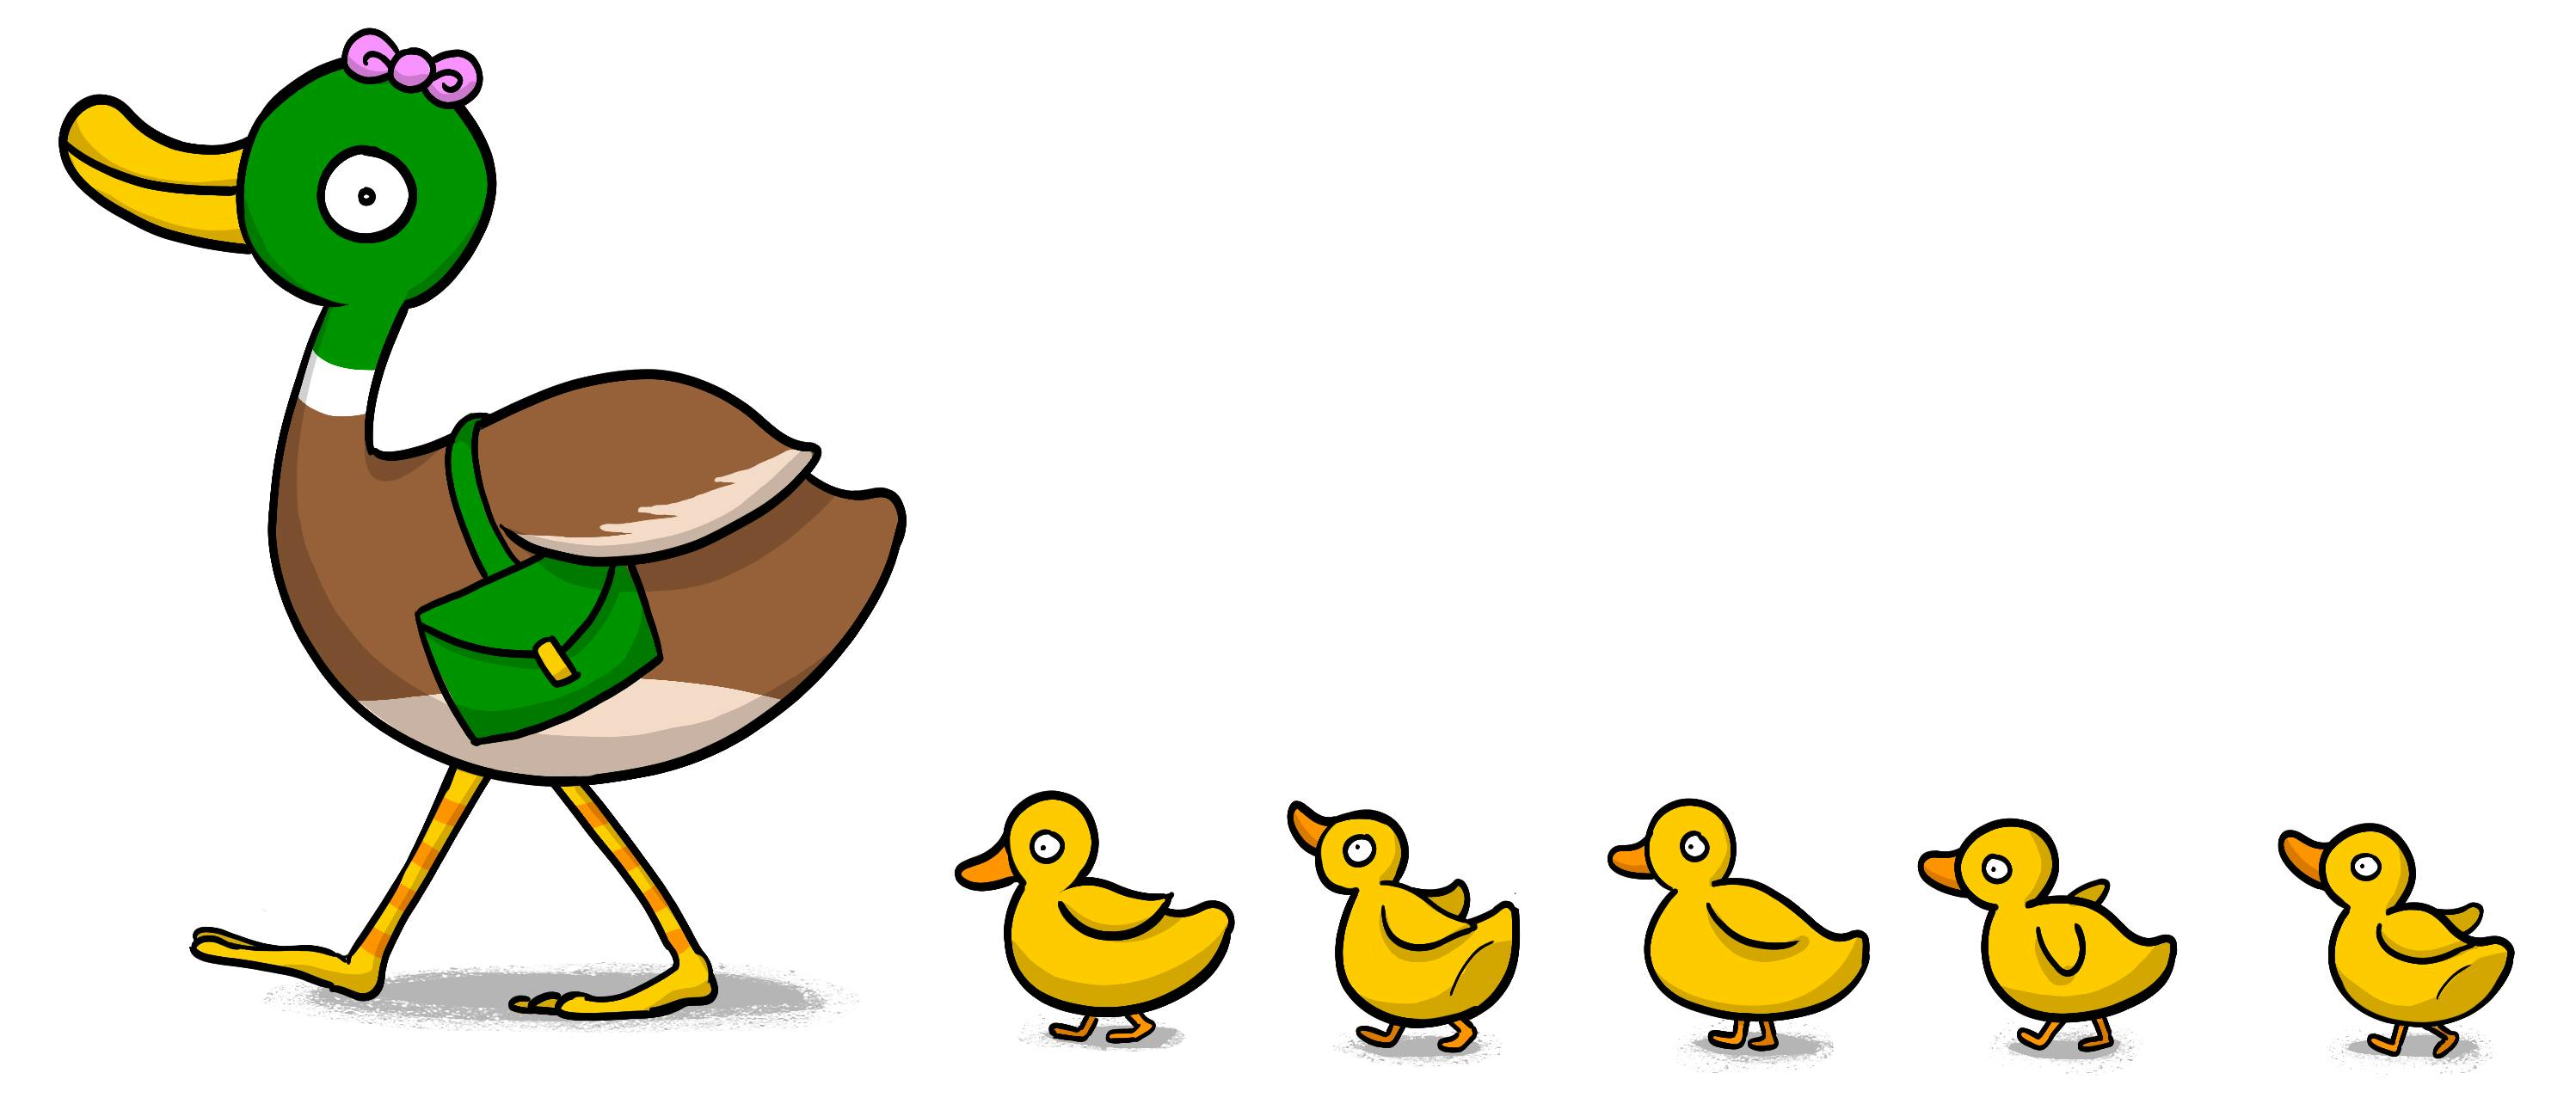 duckling cartoon